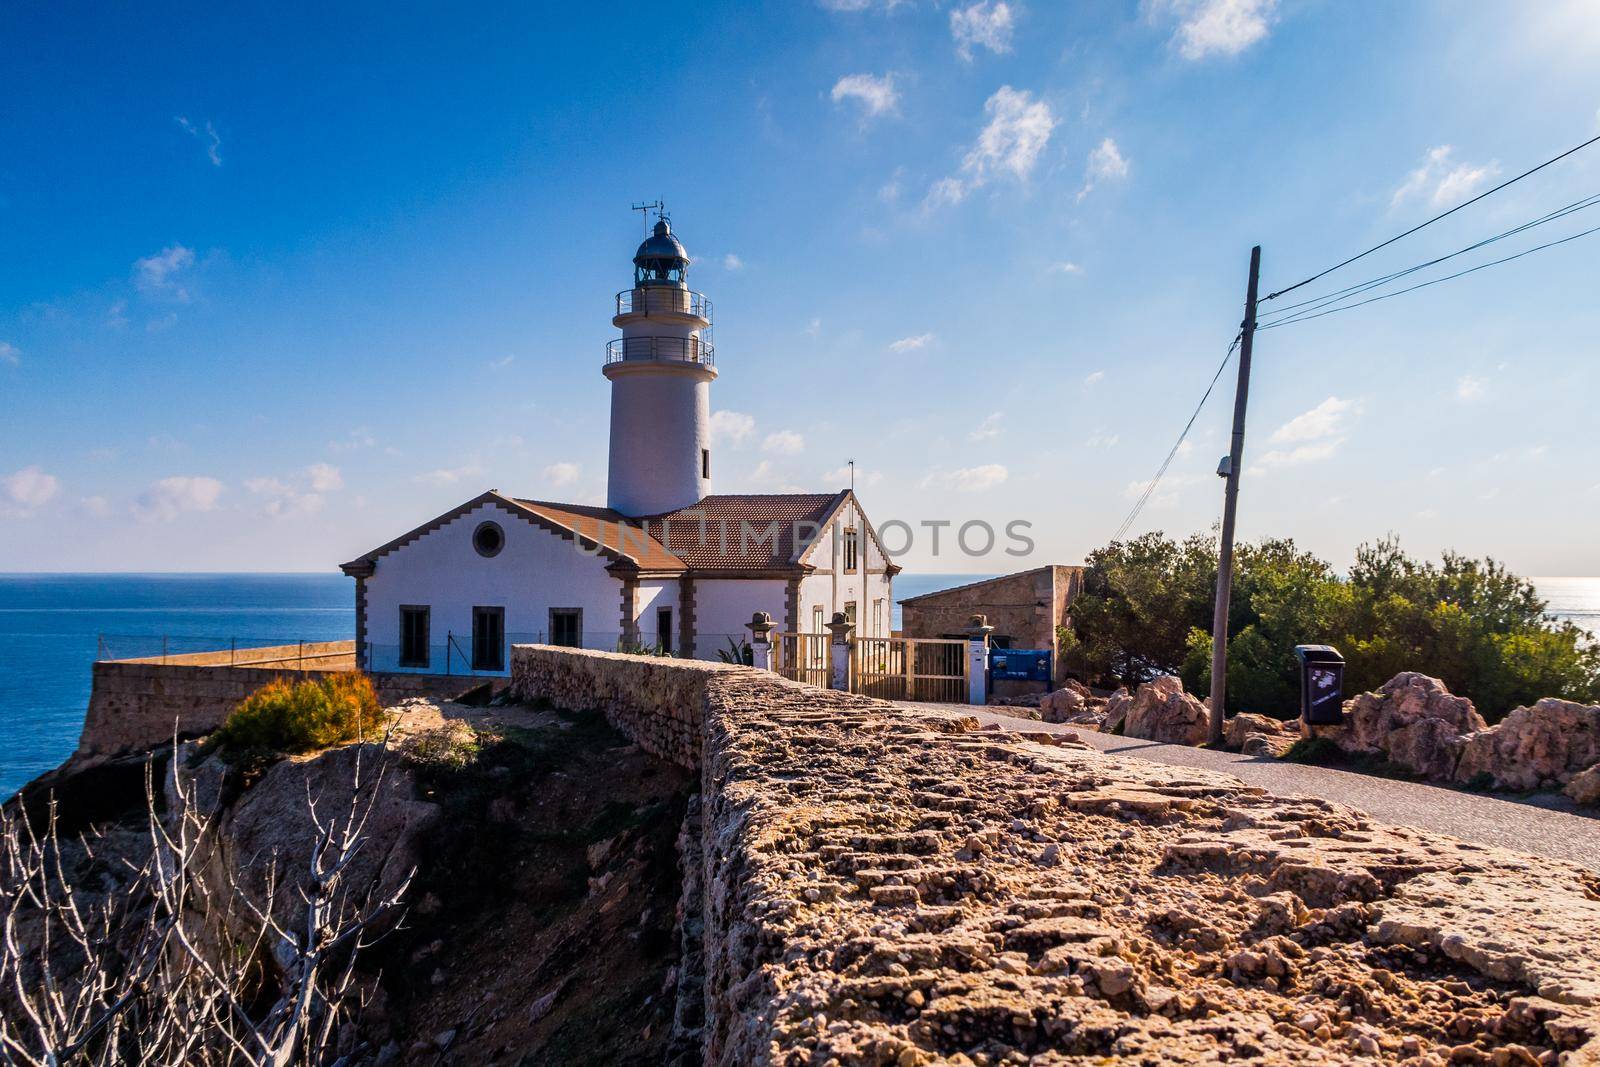 Lighthouse close to Cala Rajada, Majorca by bildgigant